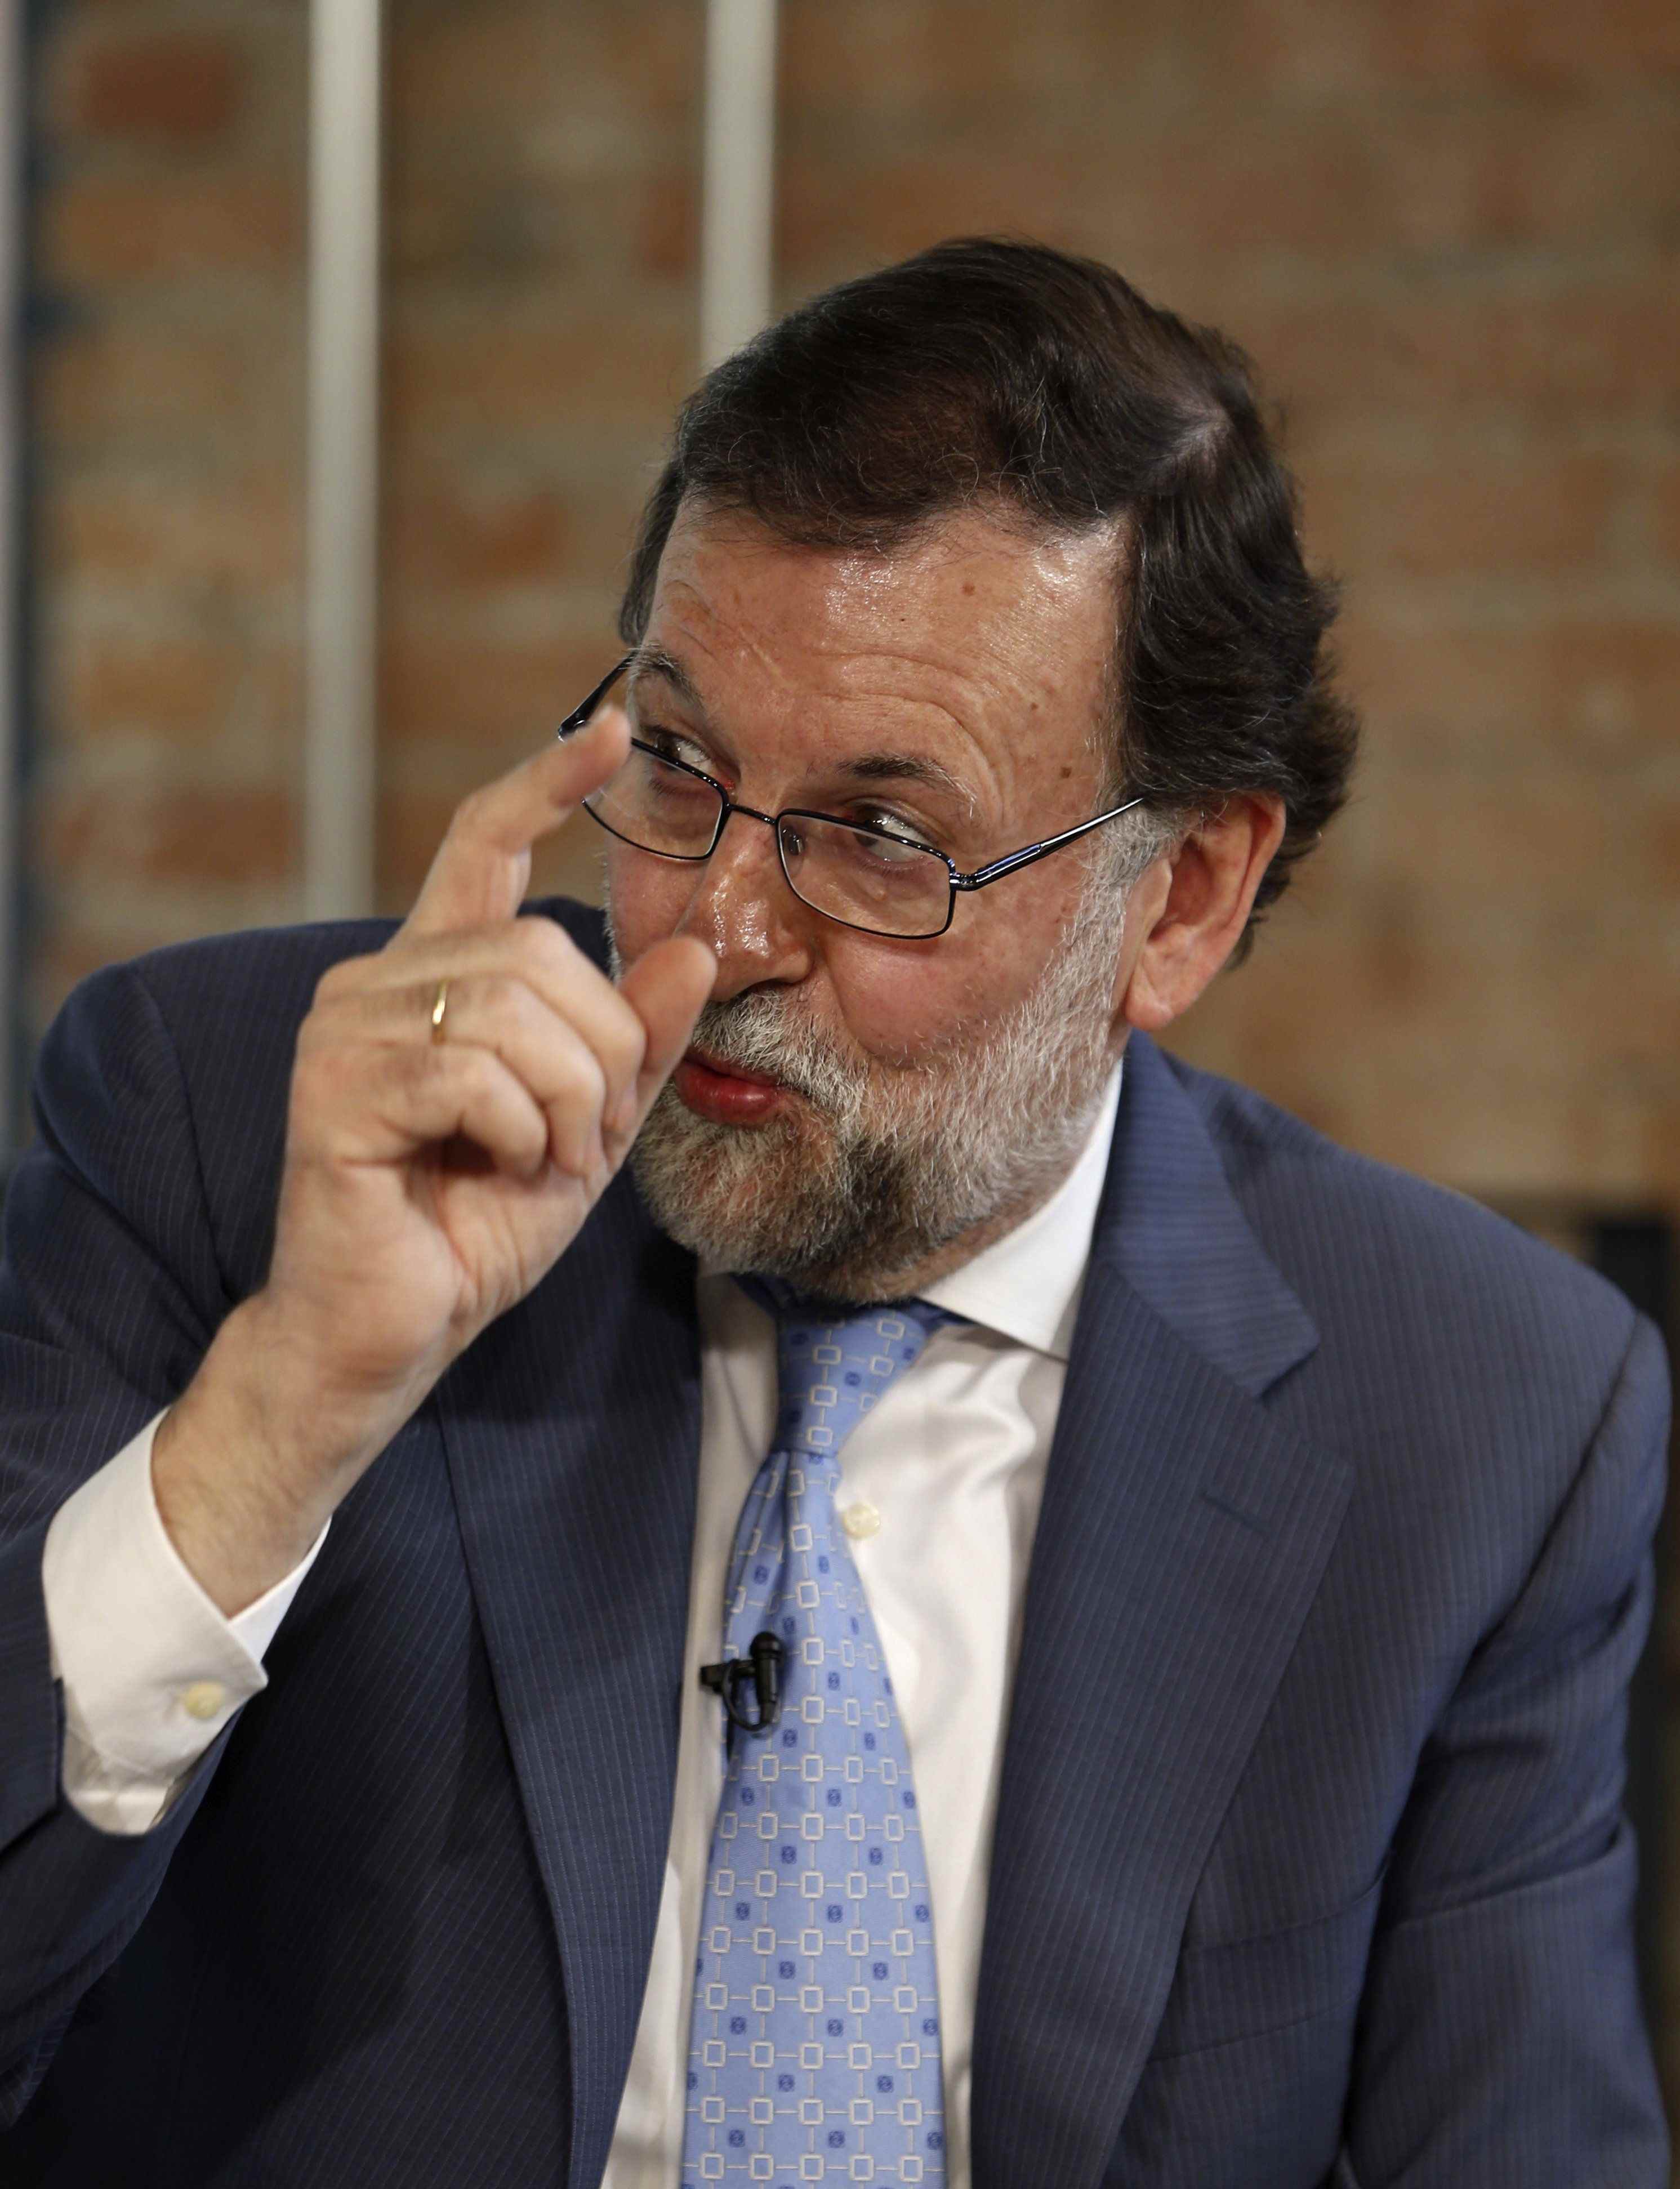 L'expresident de Múrcia demana a Rajoy que faci "un pas enrere"